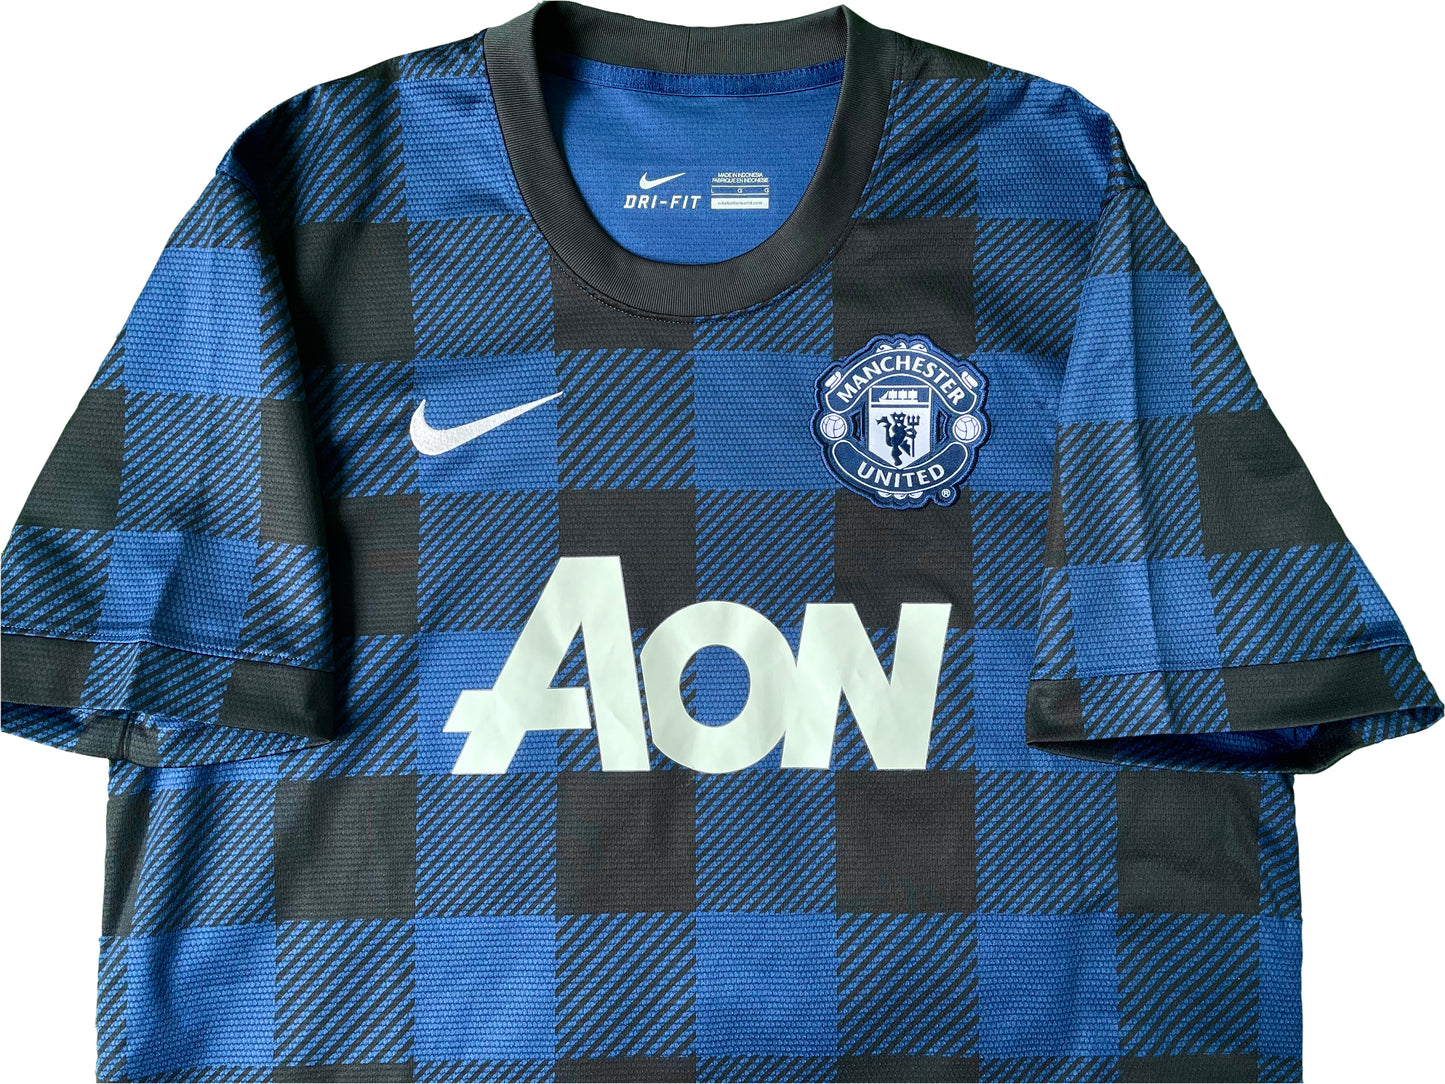 <tc>2013-2014 Manchester United FC camiseta visitante (L)</tc>